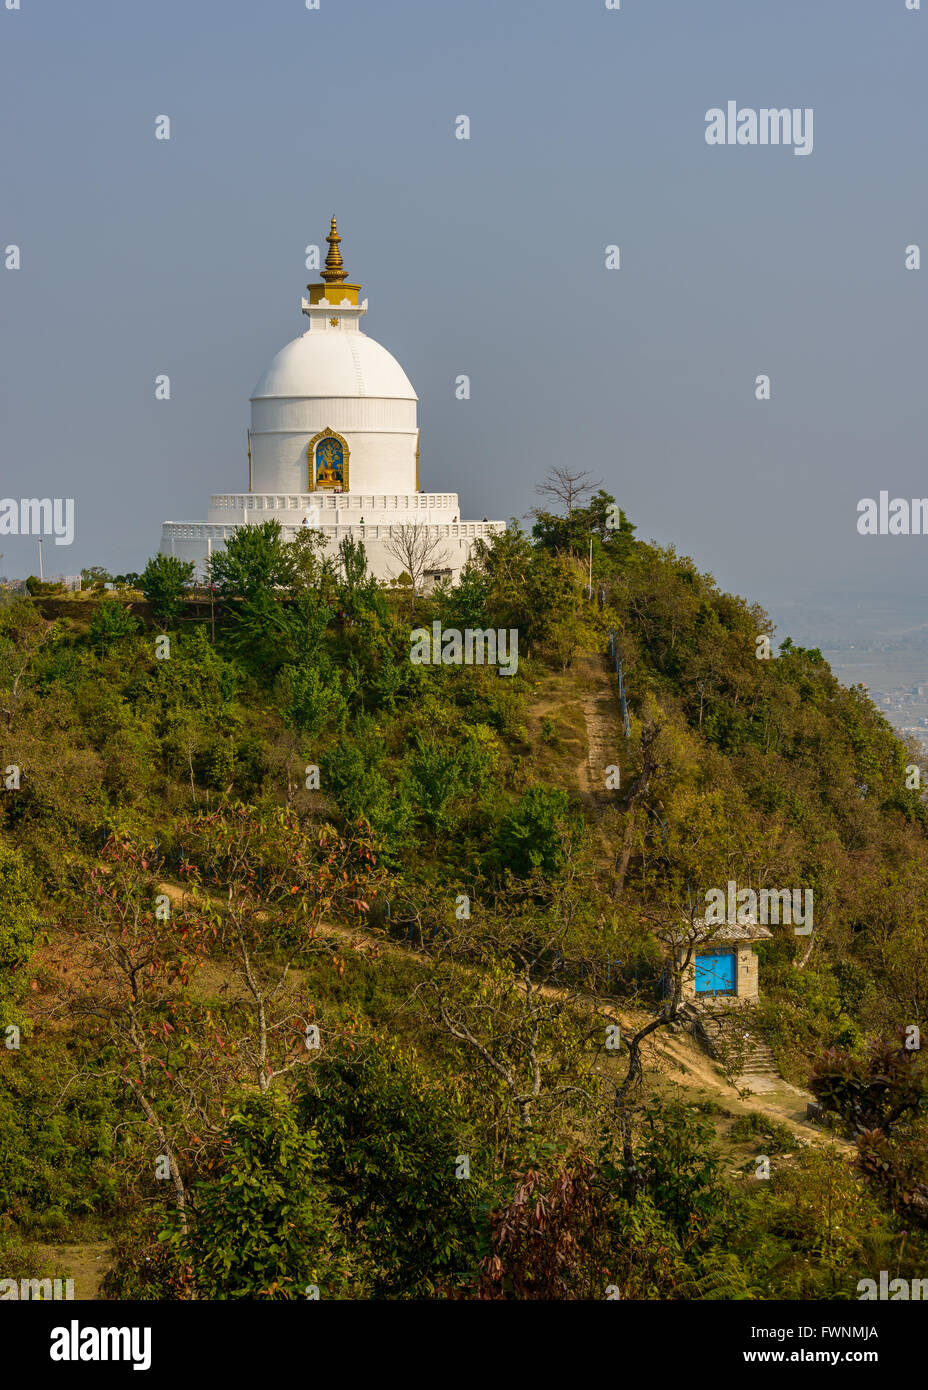 The World Peace Pagoda in Pokhara, Nepal Stock Photo